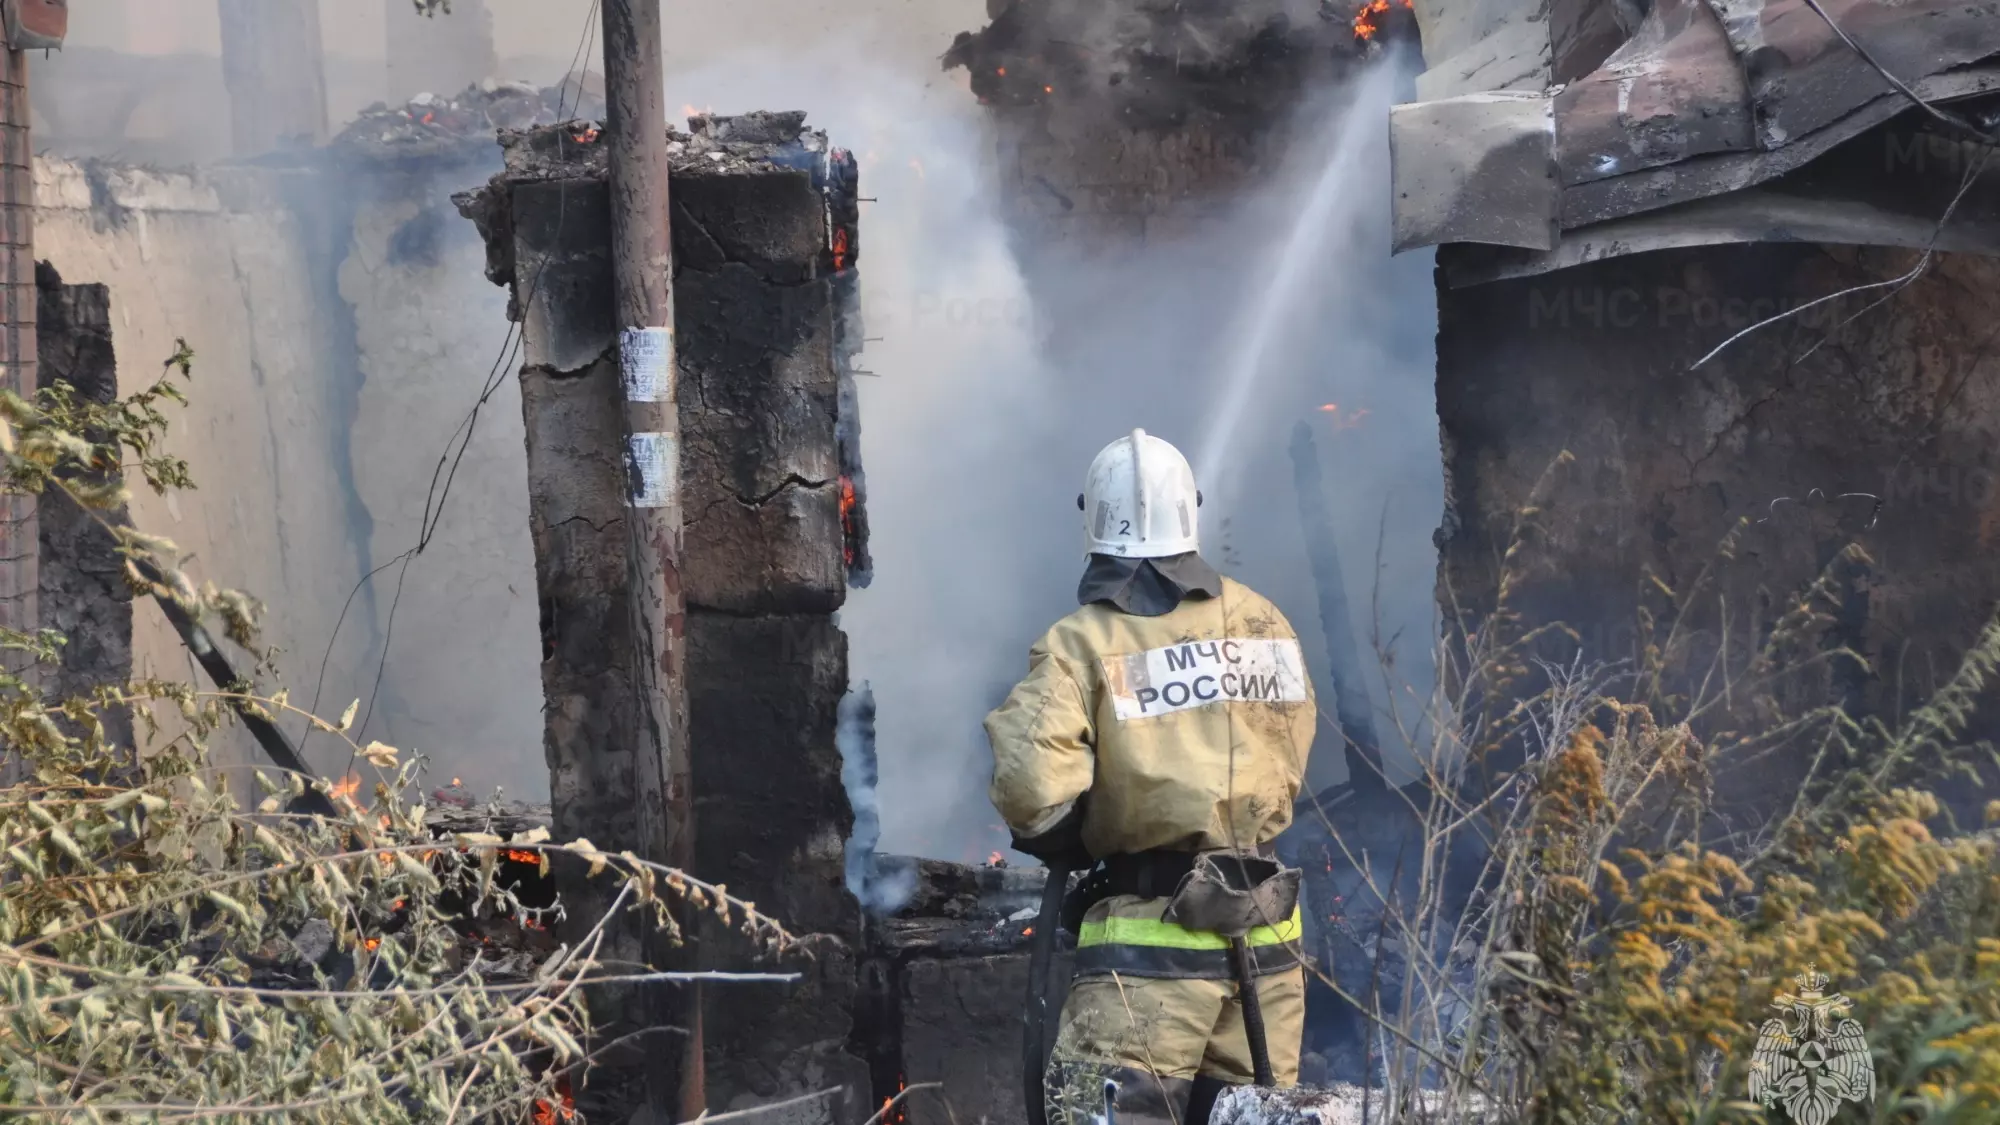 Ростовчане услышали звук взрыва перед пожаром в старинном доме на Ульяновской